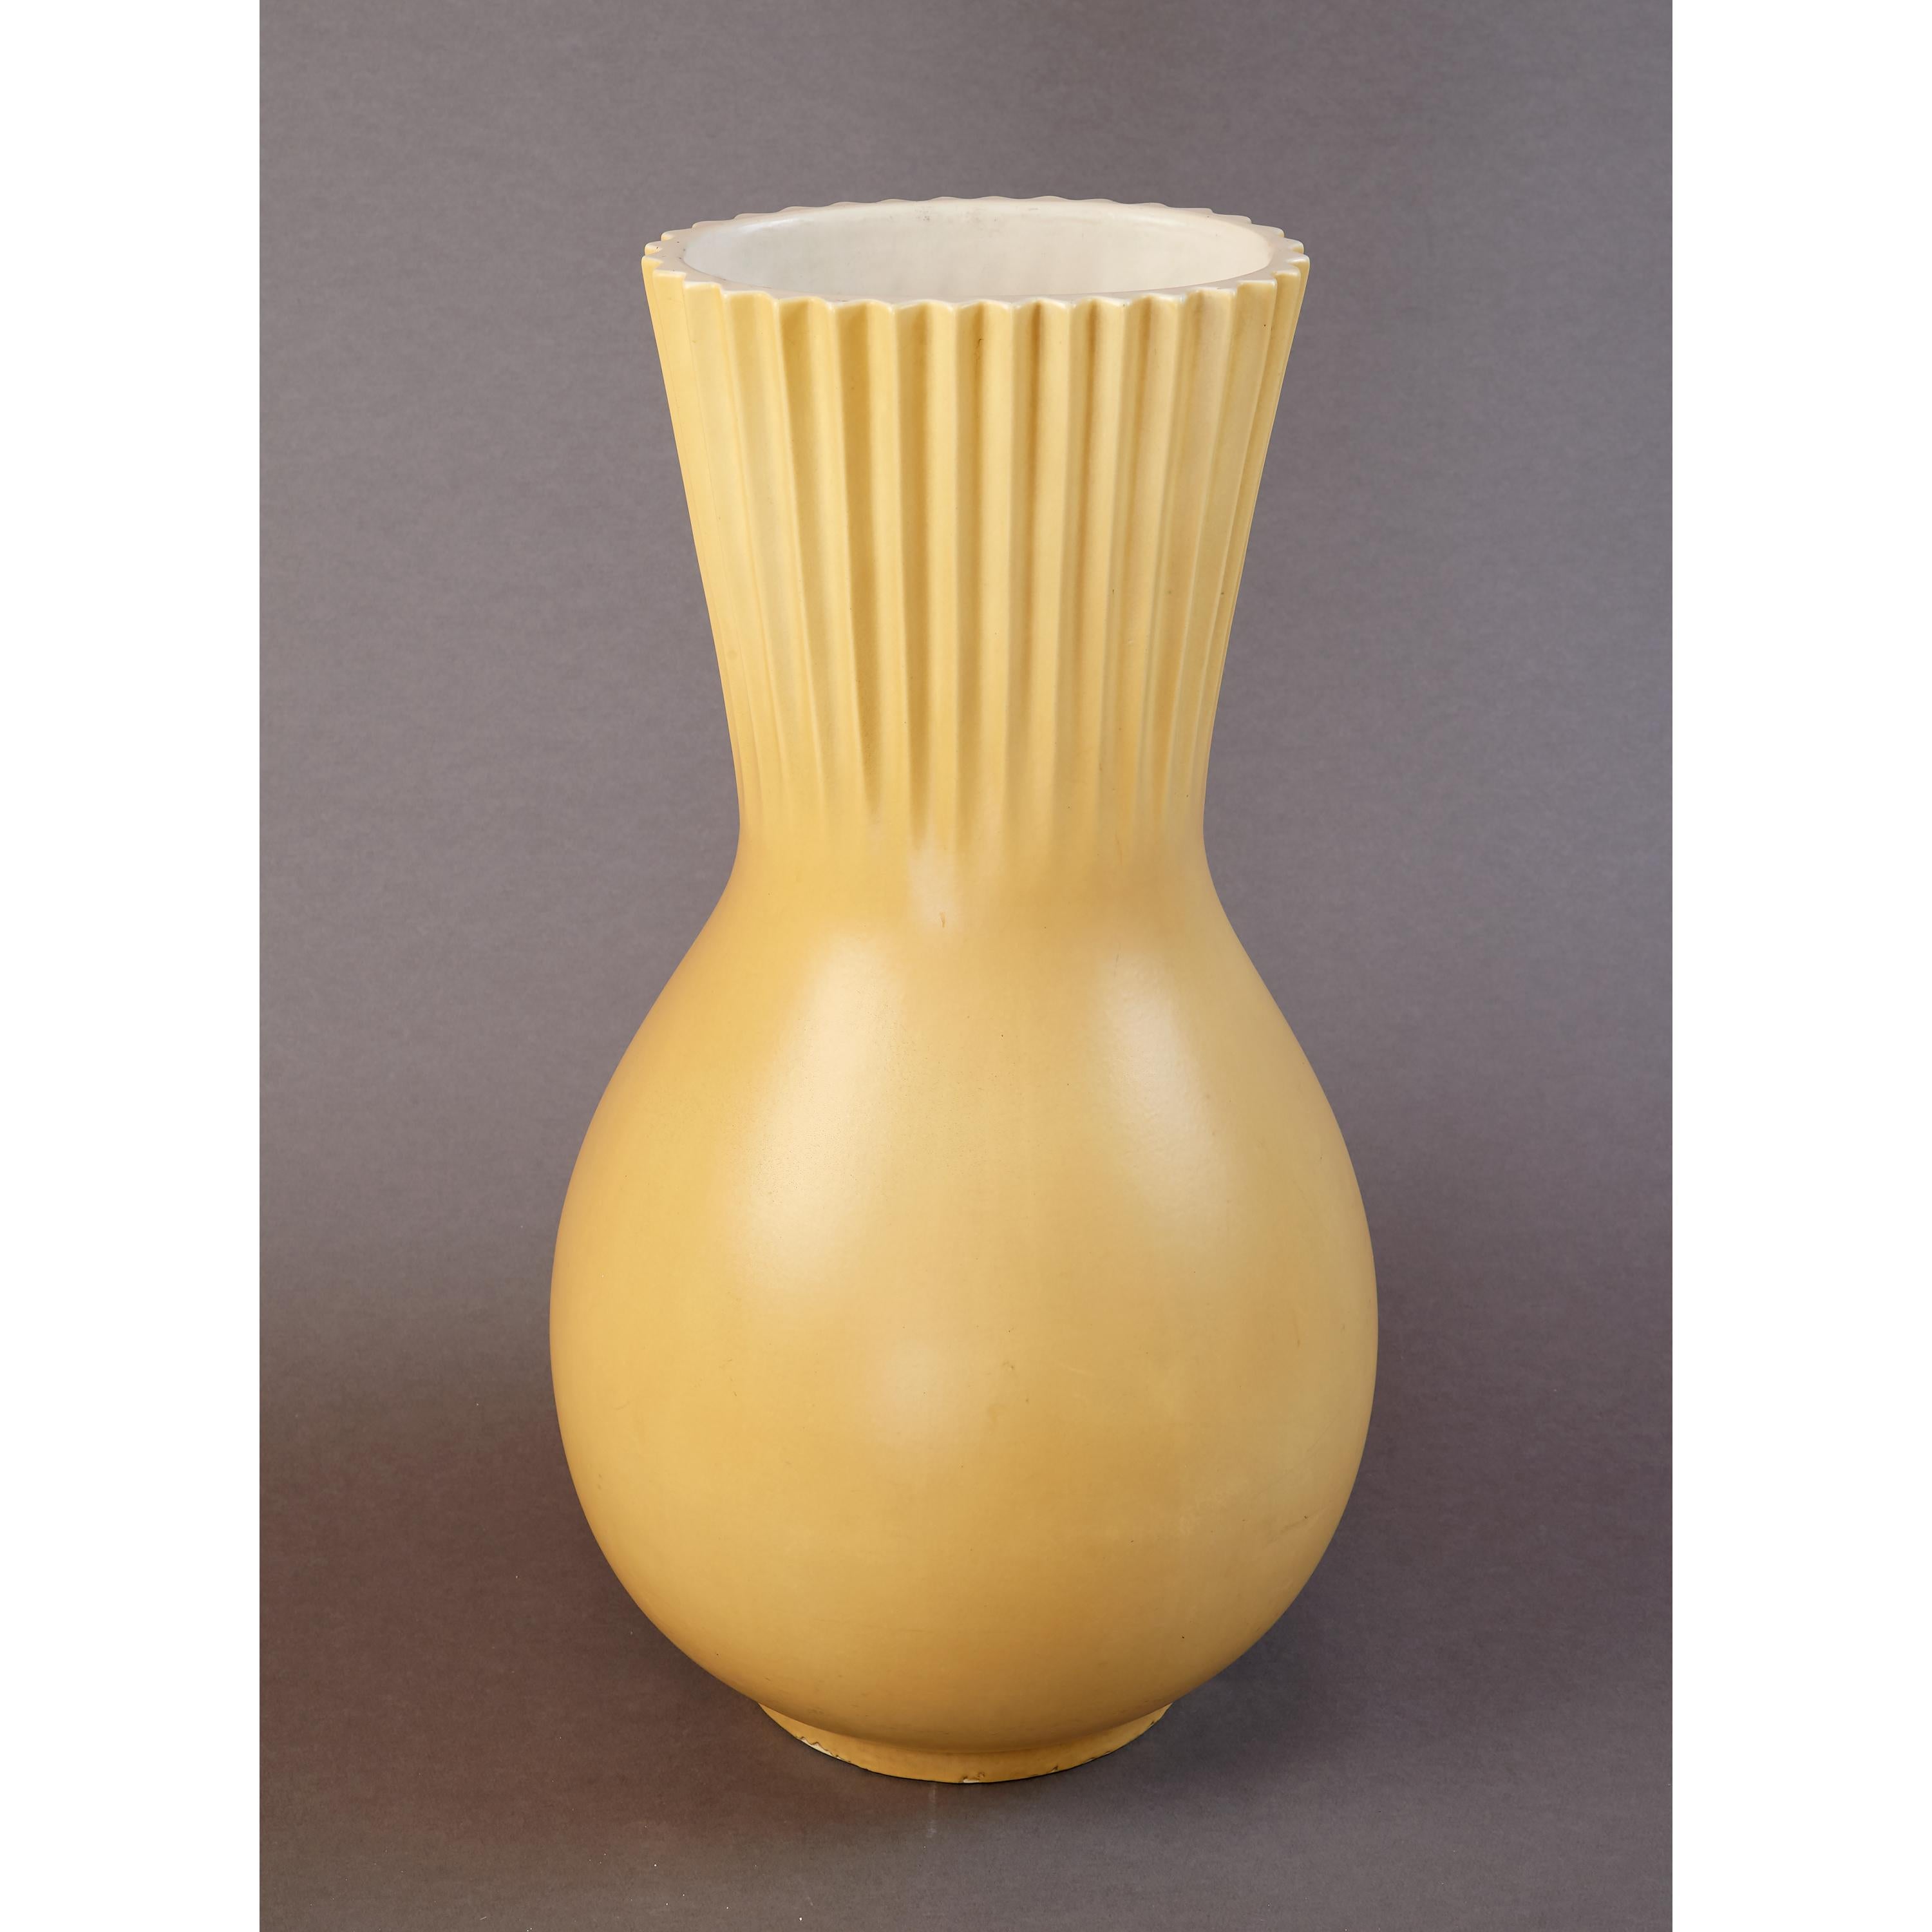 Giovanni Gariboldi (1908-1971 )
Eine imposante und hohe Vase oder ein Schirmständer aus glasierter Keramik von Giovanni Gariboldi für Richard Ginori
Italien, 1940er Jahre
Mit Herstellermarke darunter
Maße: 24 H x 13 B x 12 T.